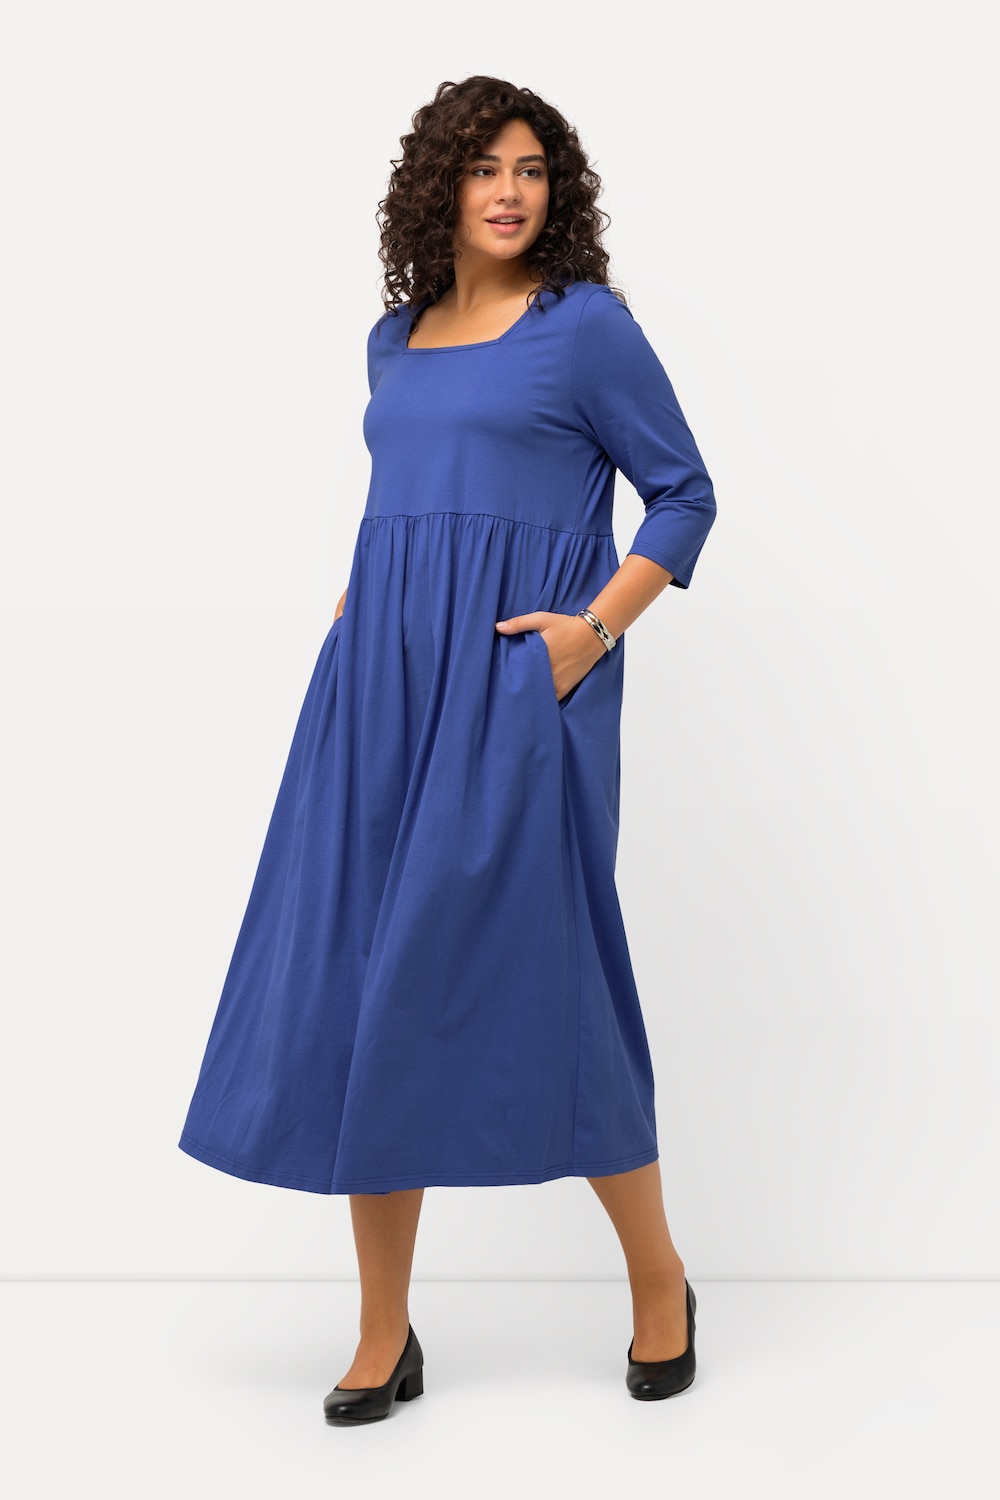 Grote Maten Jersey jurk, Dames, blauw, Maat: 66/68, Katoen, Ulla Popken